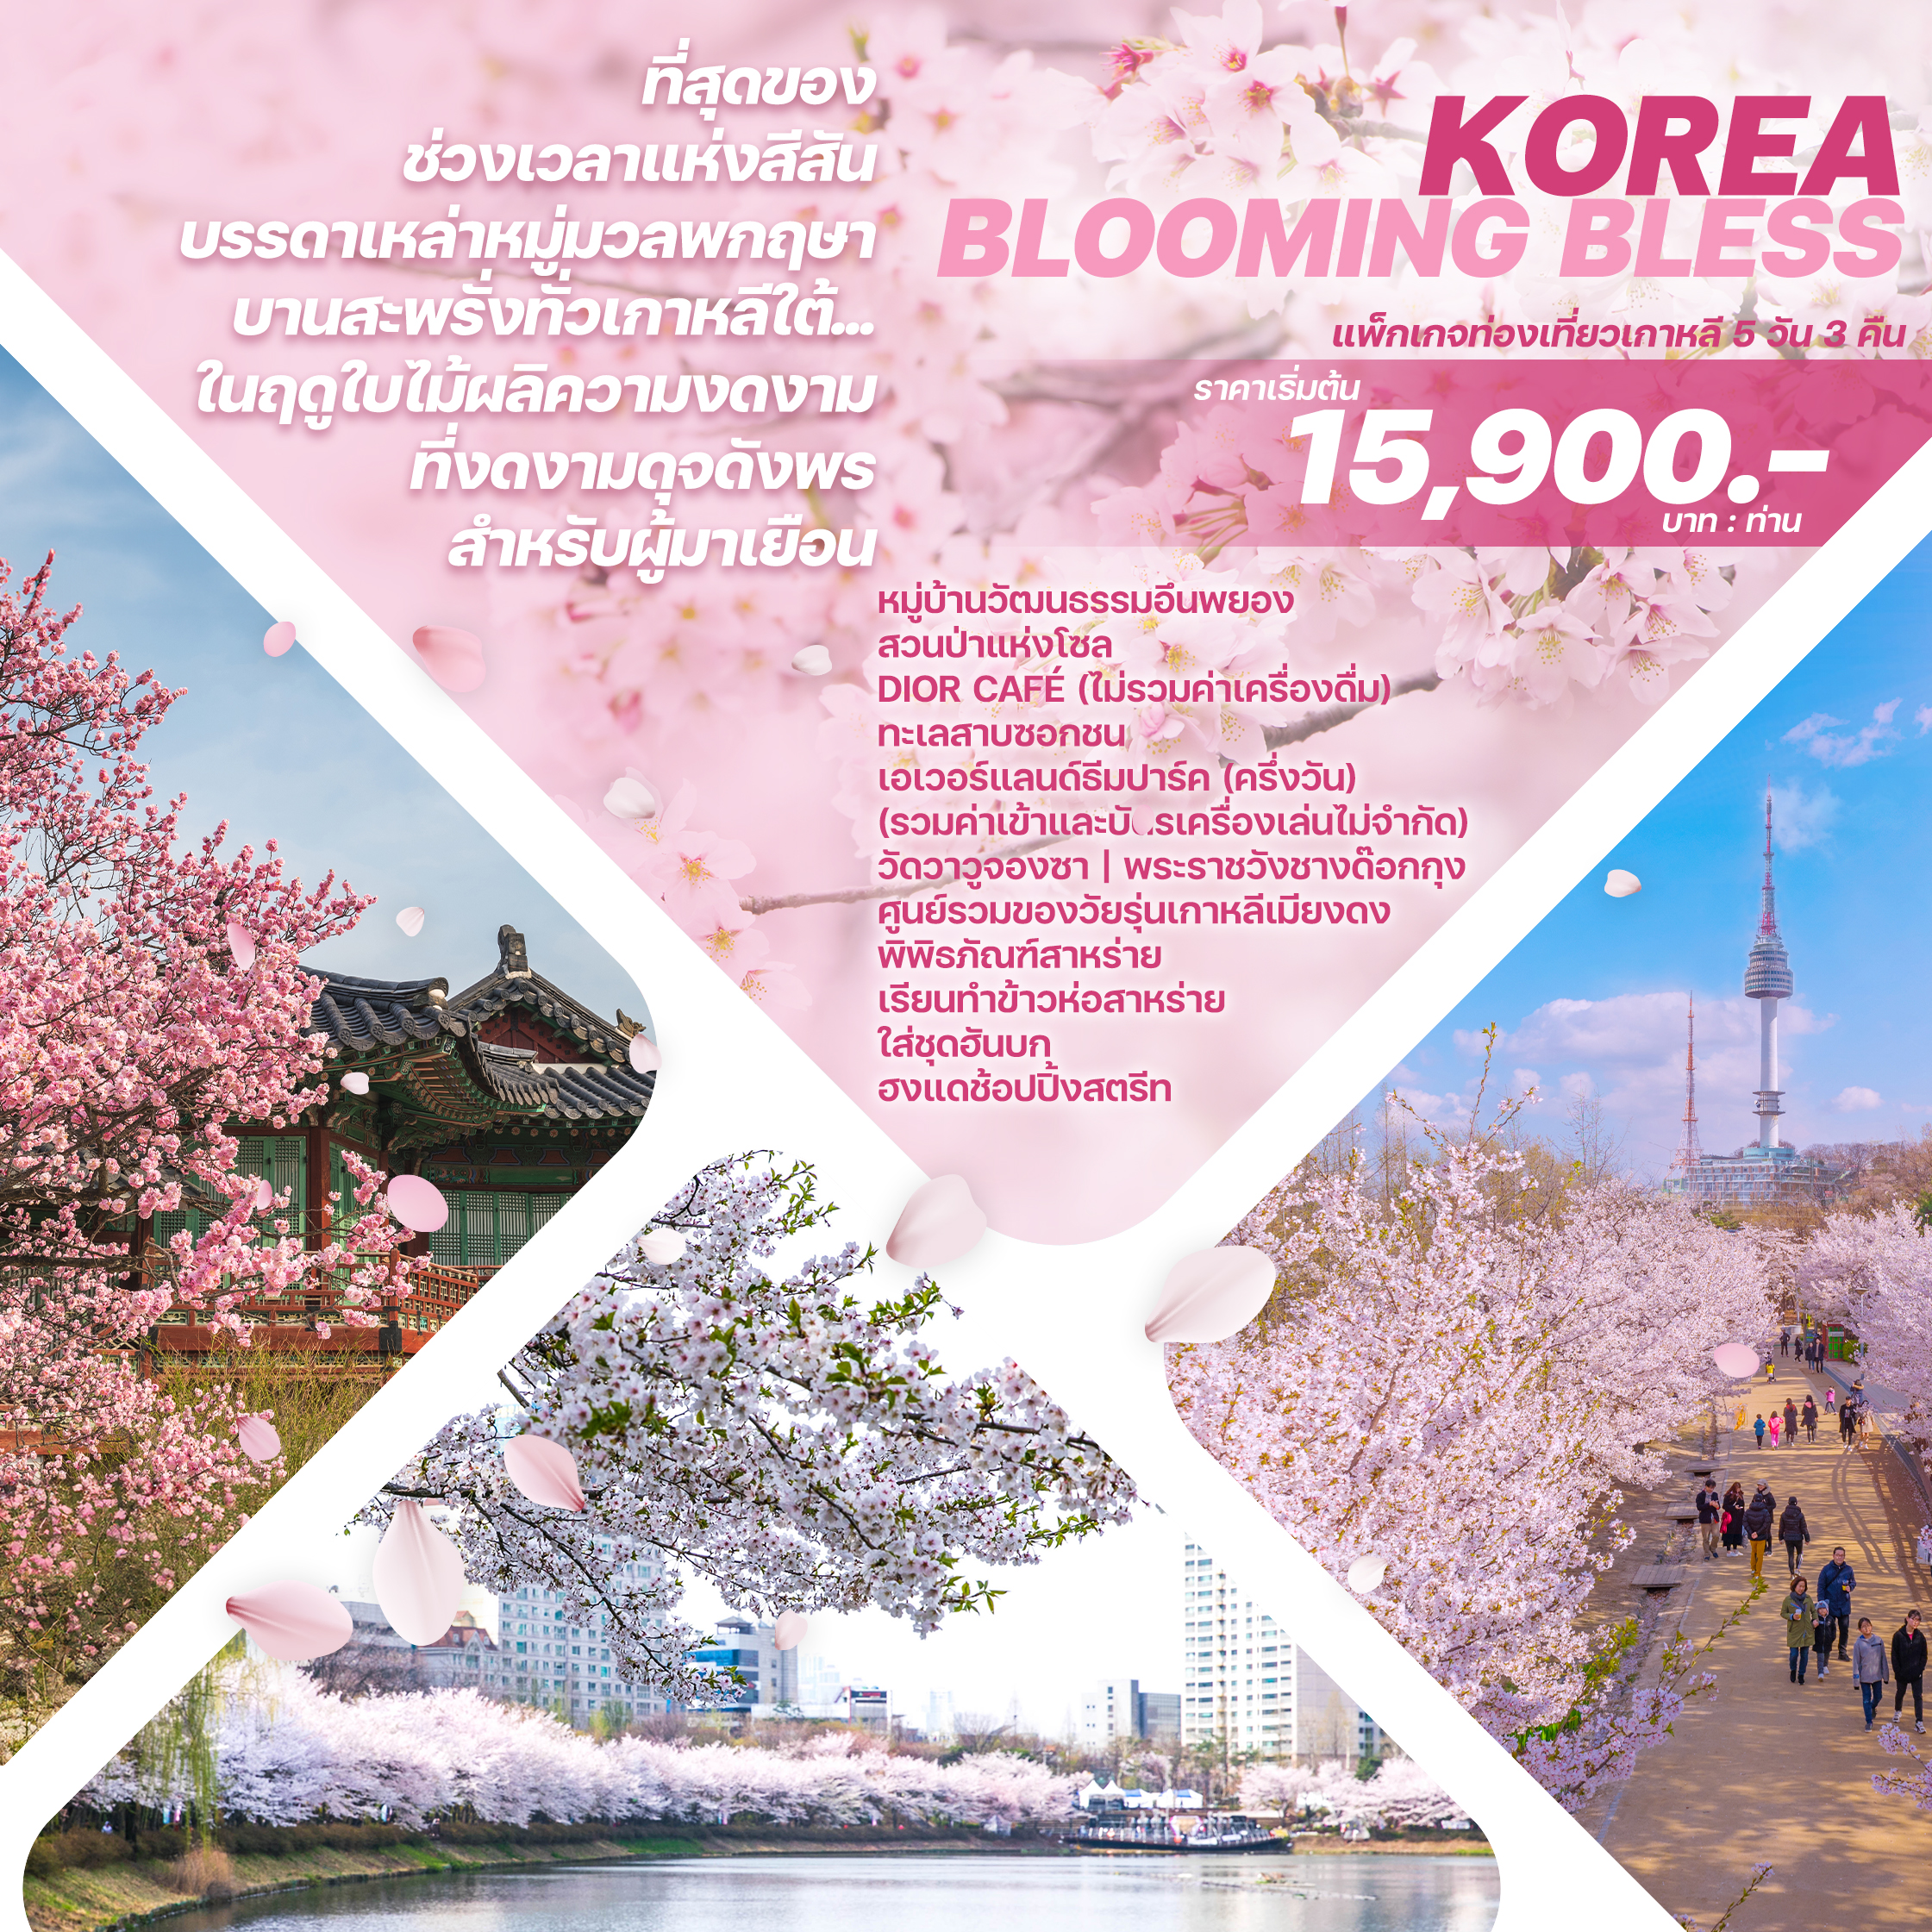 ทัวร์เกาหลี KOREA BLOOMING BLESS 5 วัน 3 คืน